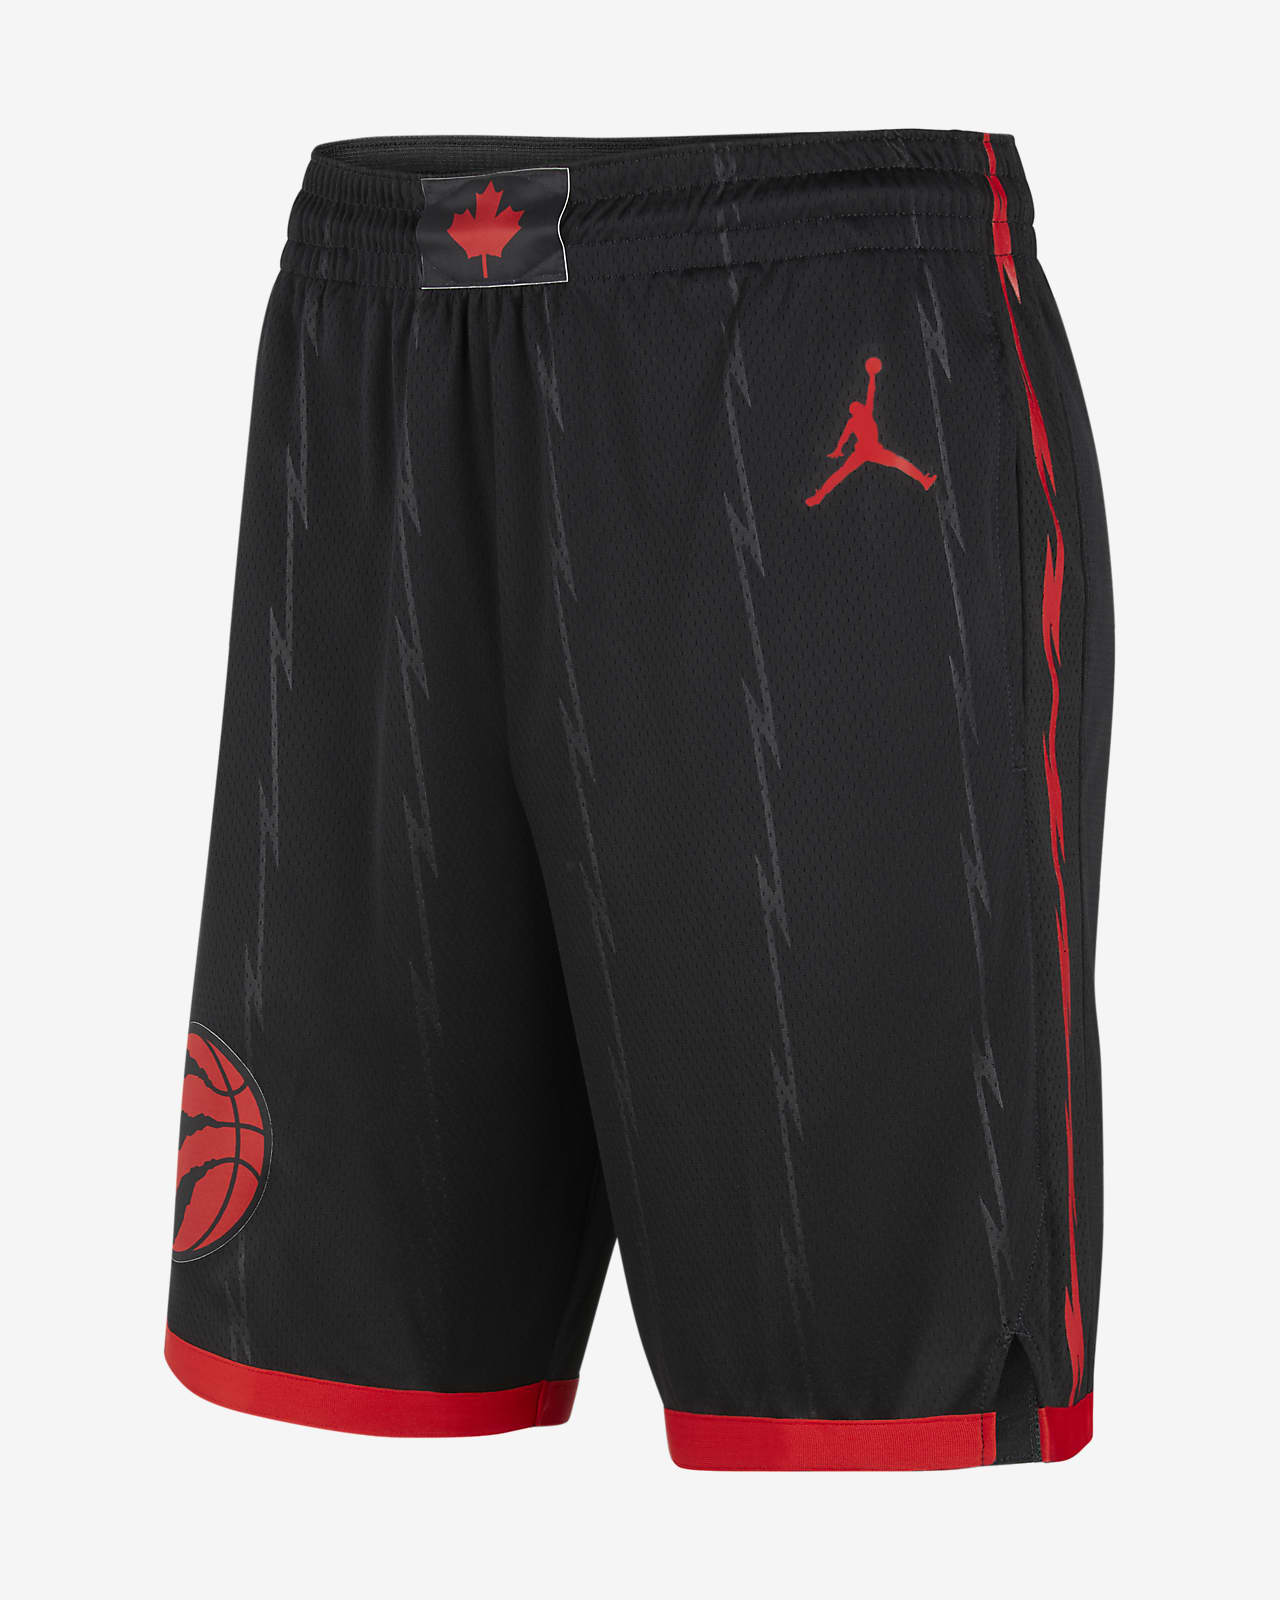 مبخرة الكترونية Raptors Statement Edition 2020 Men's Jordan NBA Swingman Shorts ... مبخرة الكترونية